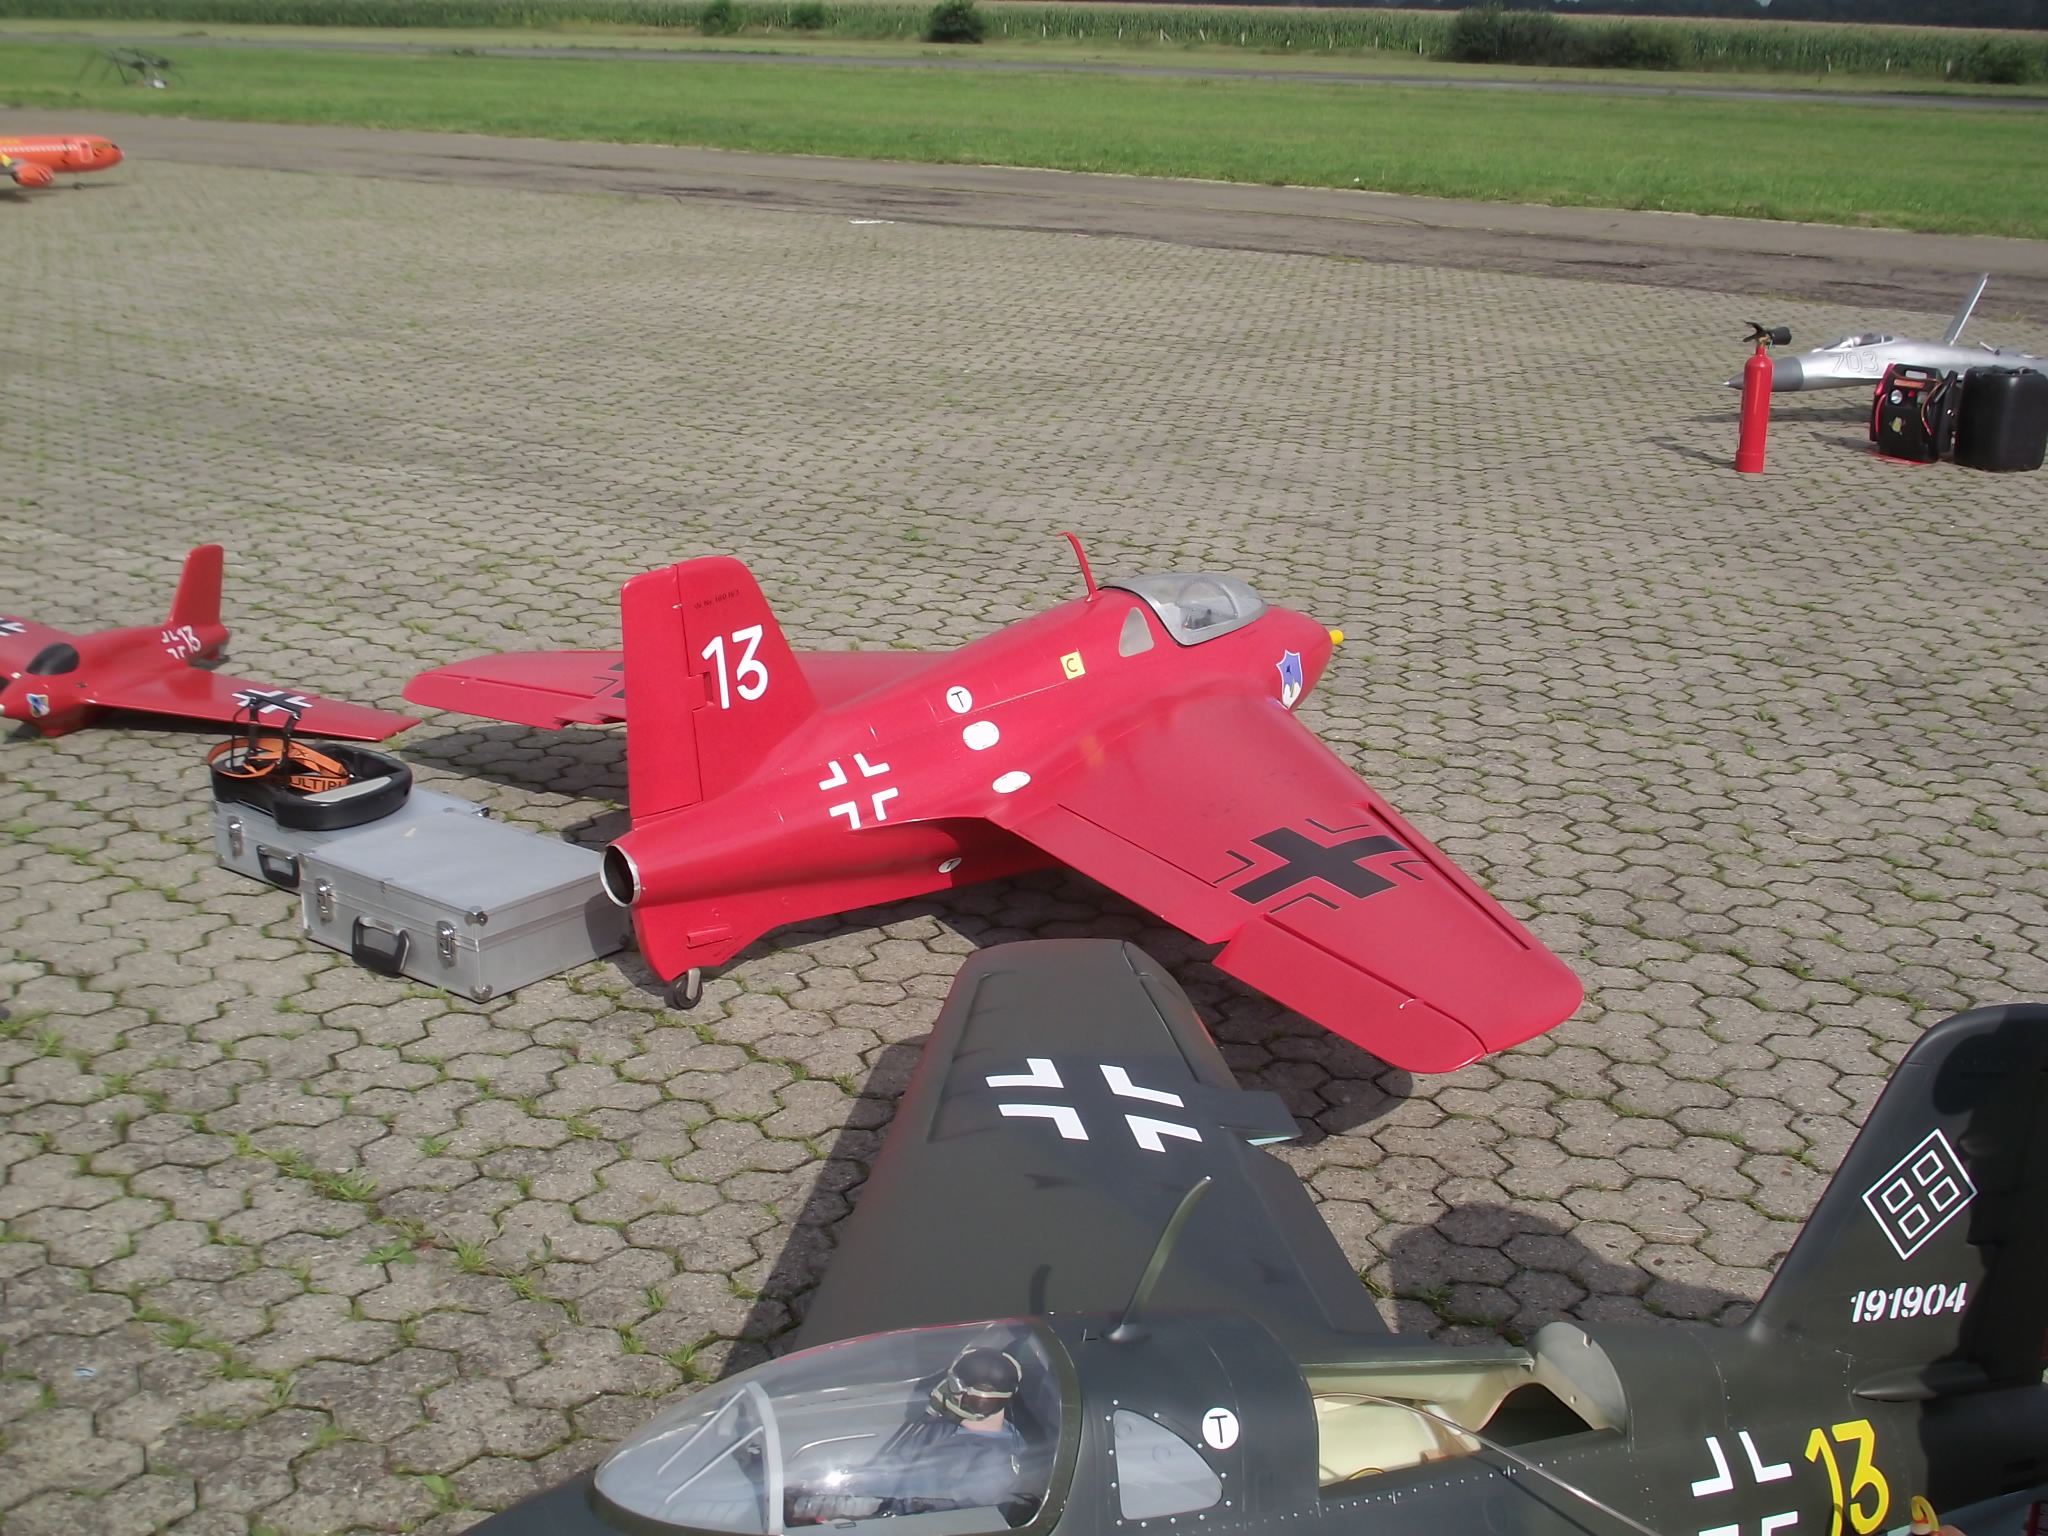 Jet-Flugtage in Ganderkesee - hier werden die Modelle präsentiert - kleine und große Kampfflieger